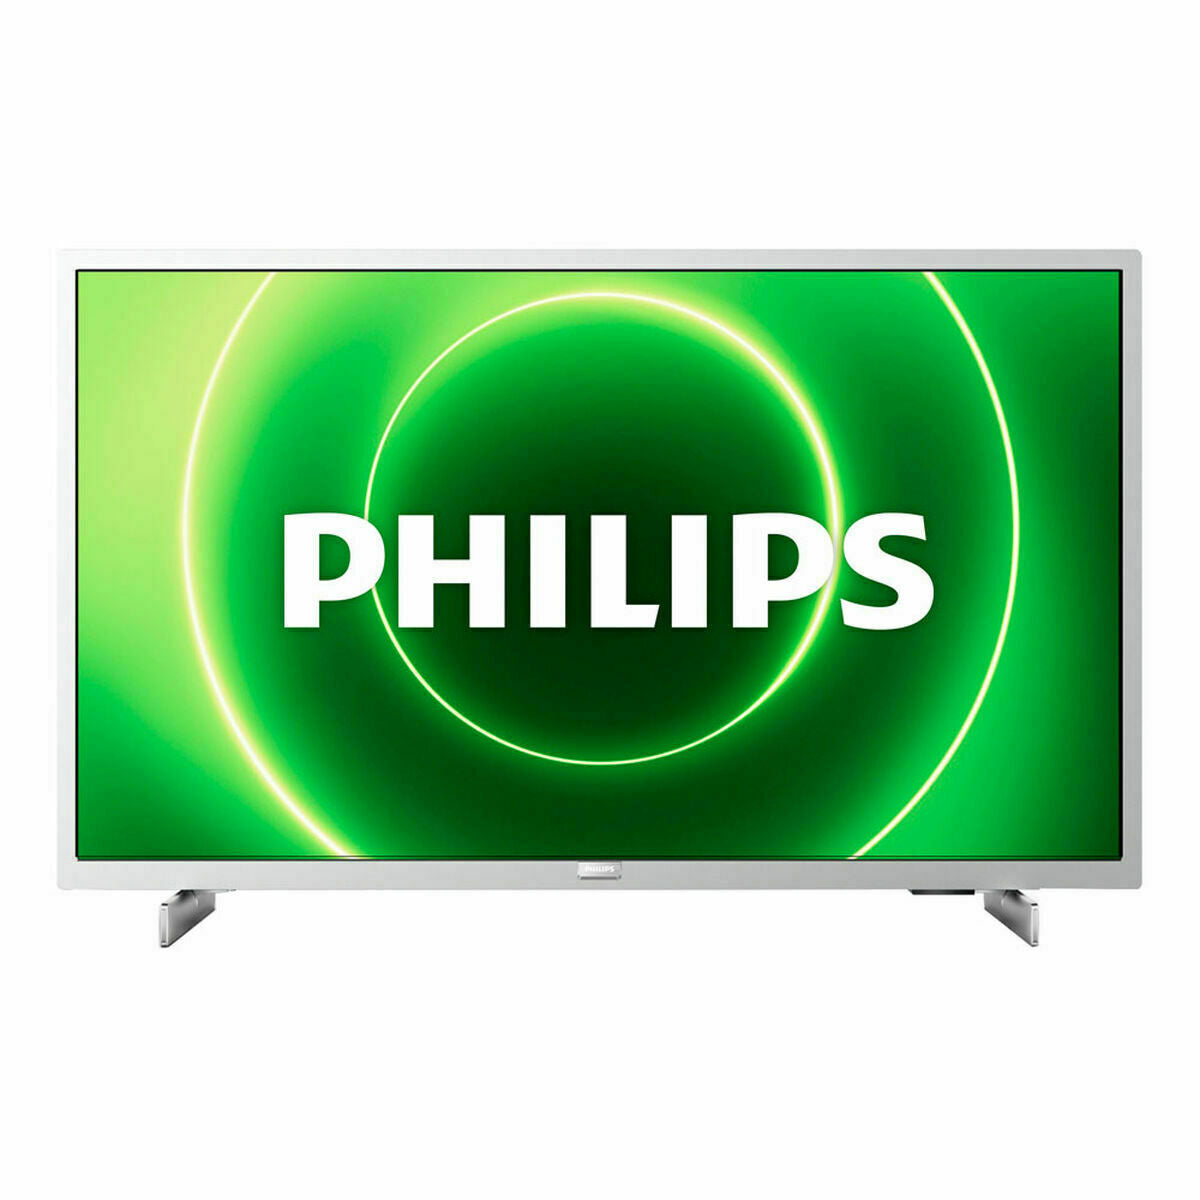 Smart TV Philips 32PFS6855/12 32" FHD LED LED Full HD